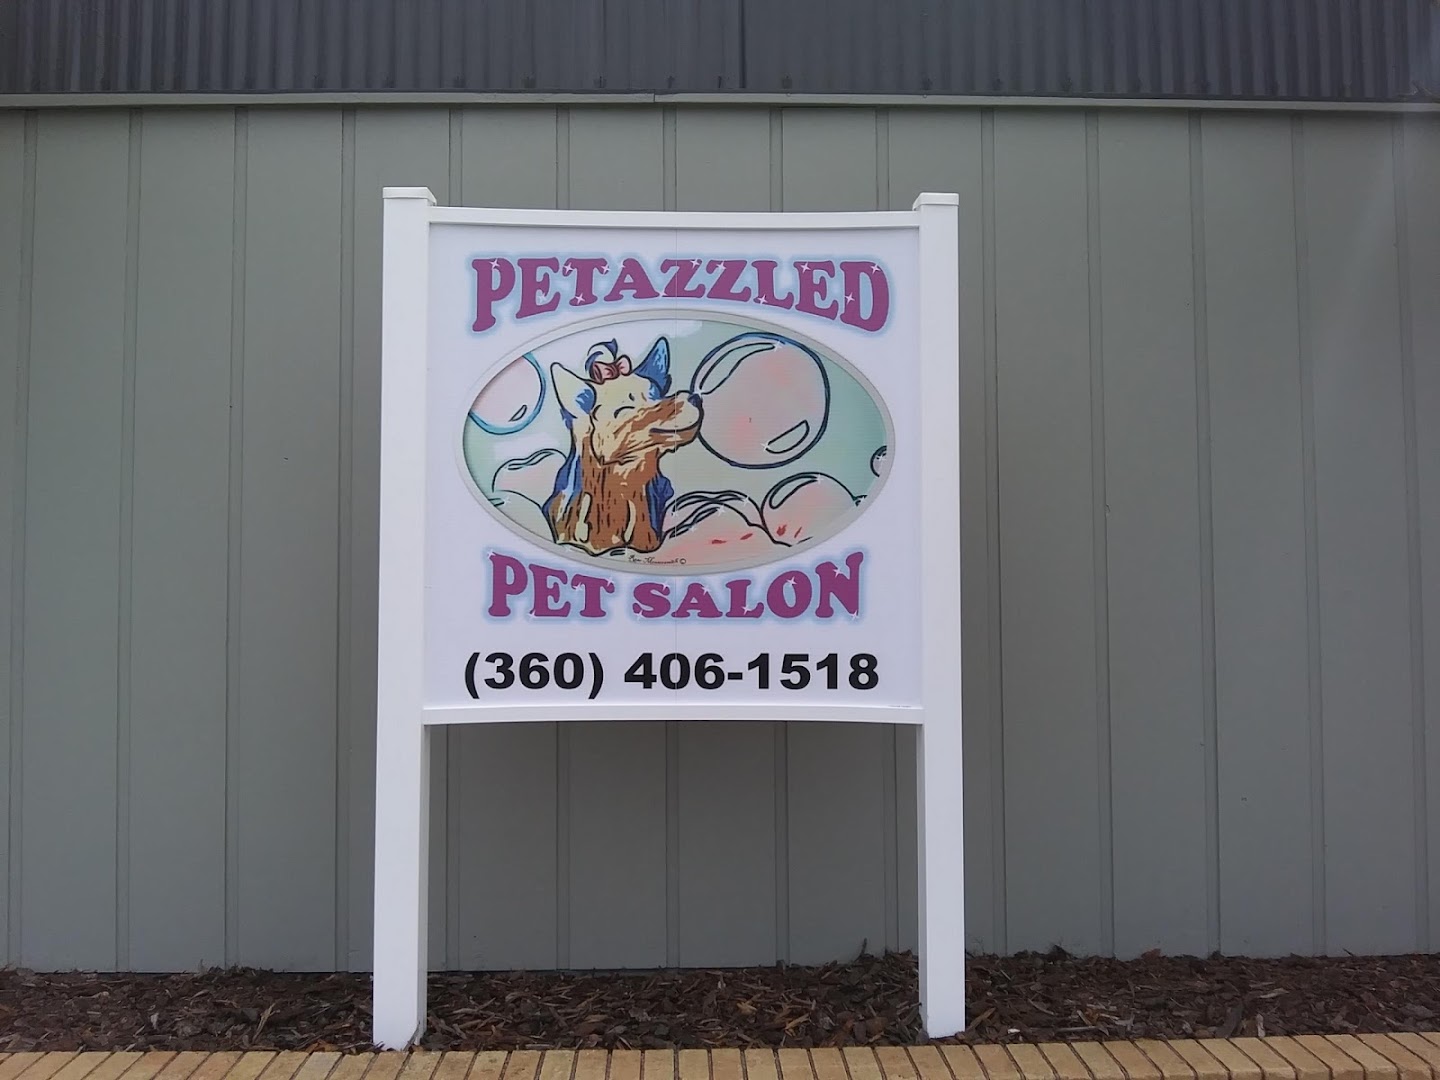 Petazzled Pet Salon